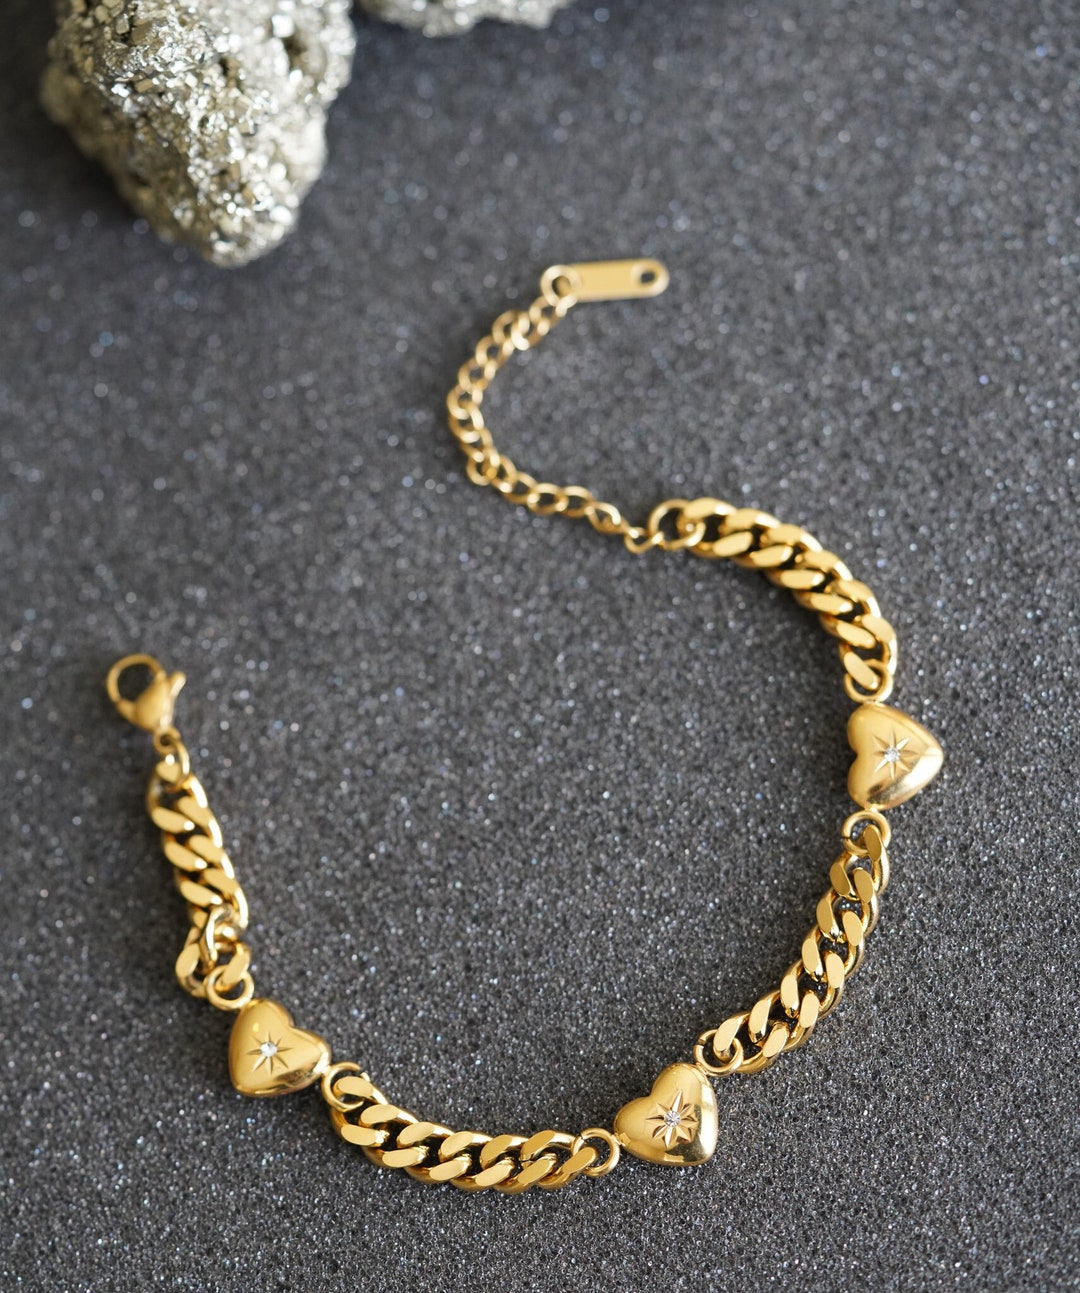 Gold Plated Crystal Heart Pendant Charms Bracelet,gold Heart Charm Love  Heart Snake Chain Charm for Bracelet,bracelet for Women,best Friend 